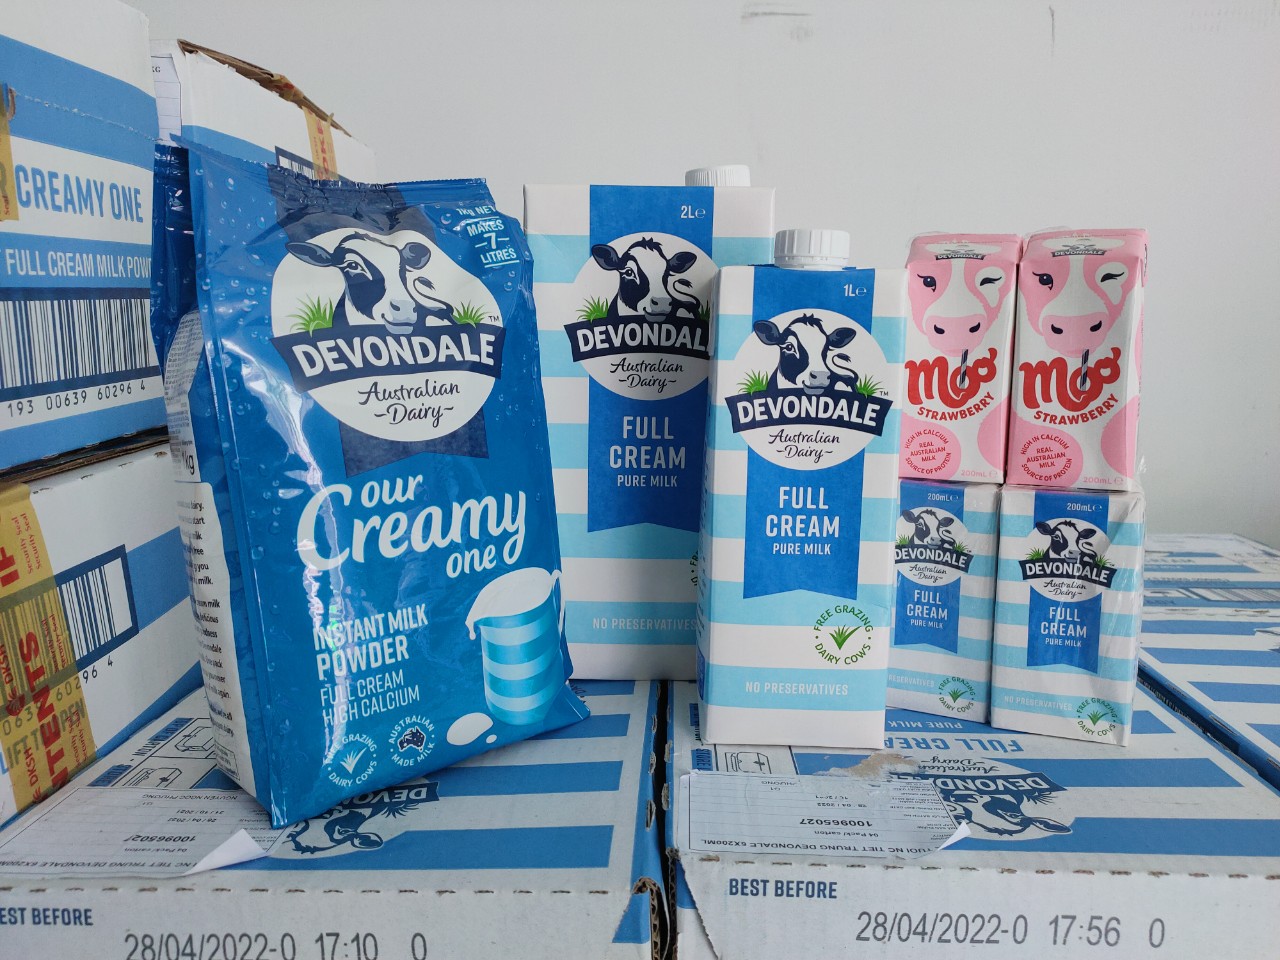 Hãy mua sữa Devondale tại Milkman để nhận được mức giá ưu đãi